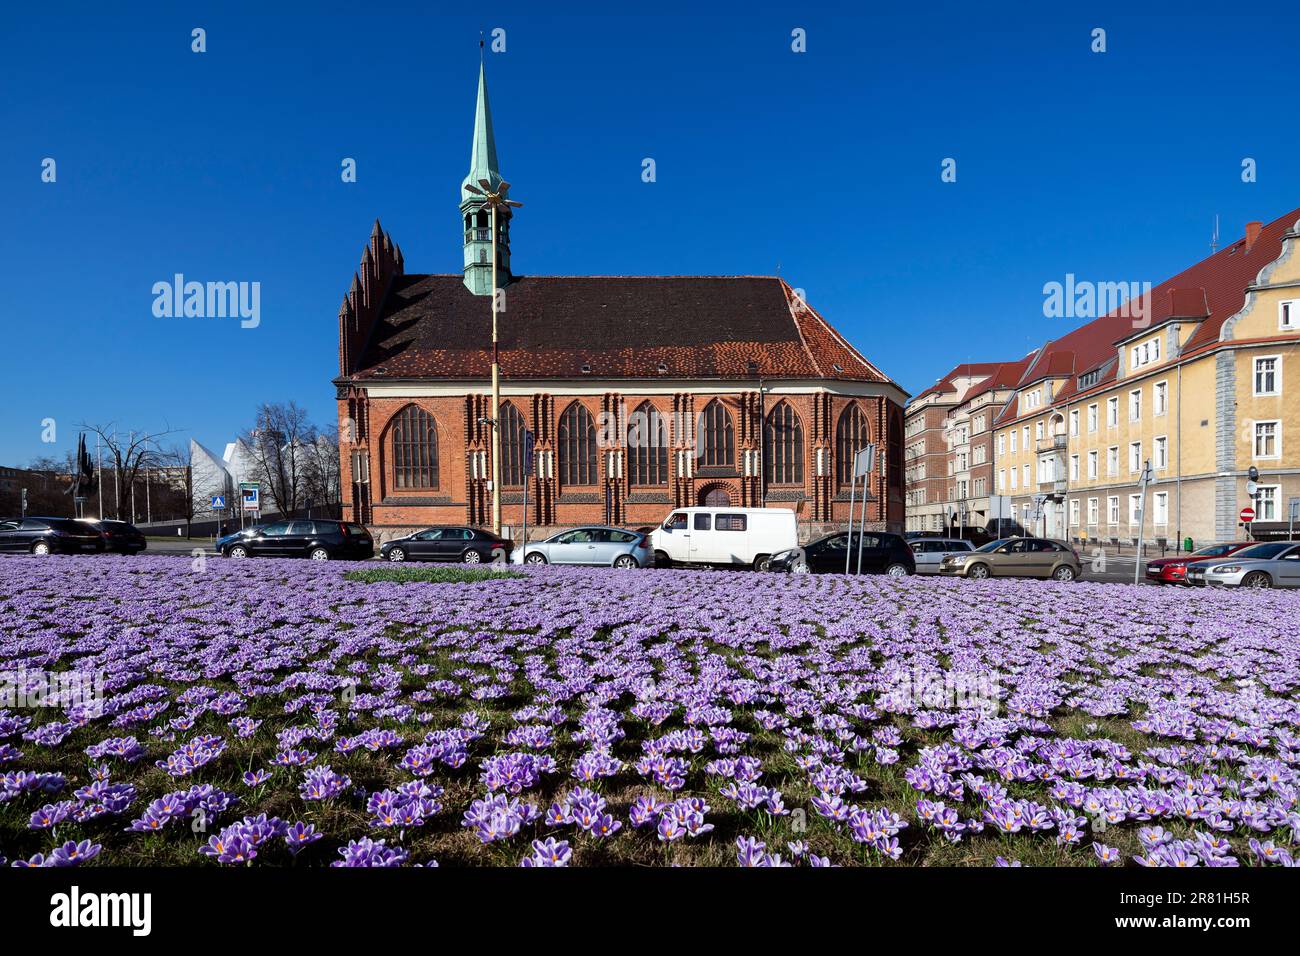 Pologne, Szczecin - printemps polonais, crocus en fleurs, fleurs violettes dans le parc de la ville et allée des platanes, beau printemps Banque D'Images